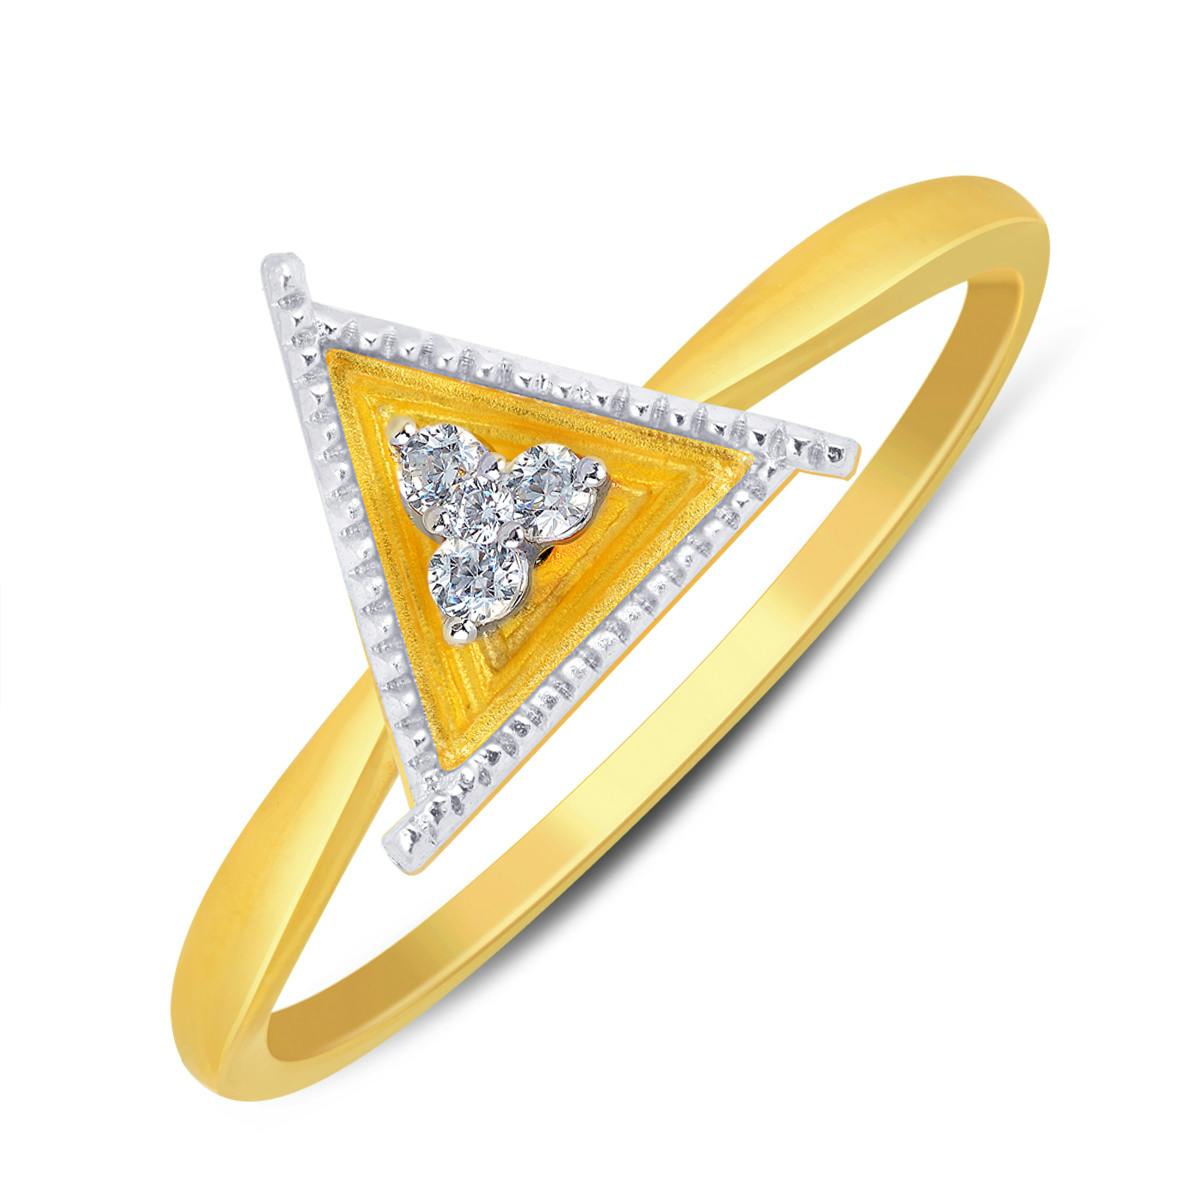 Triangular Glory Ring